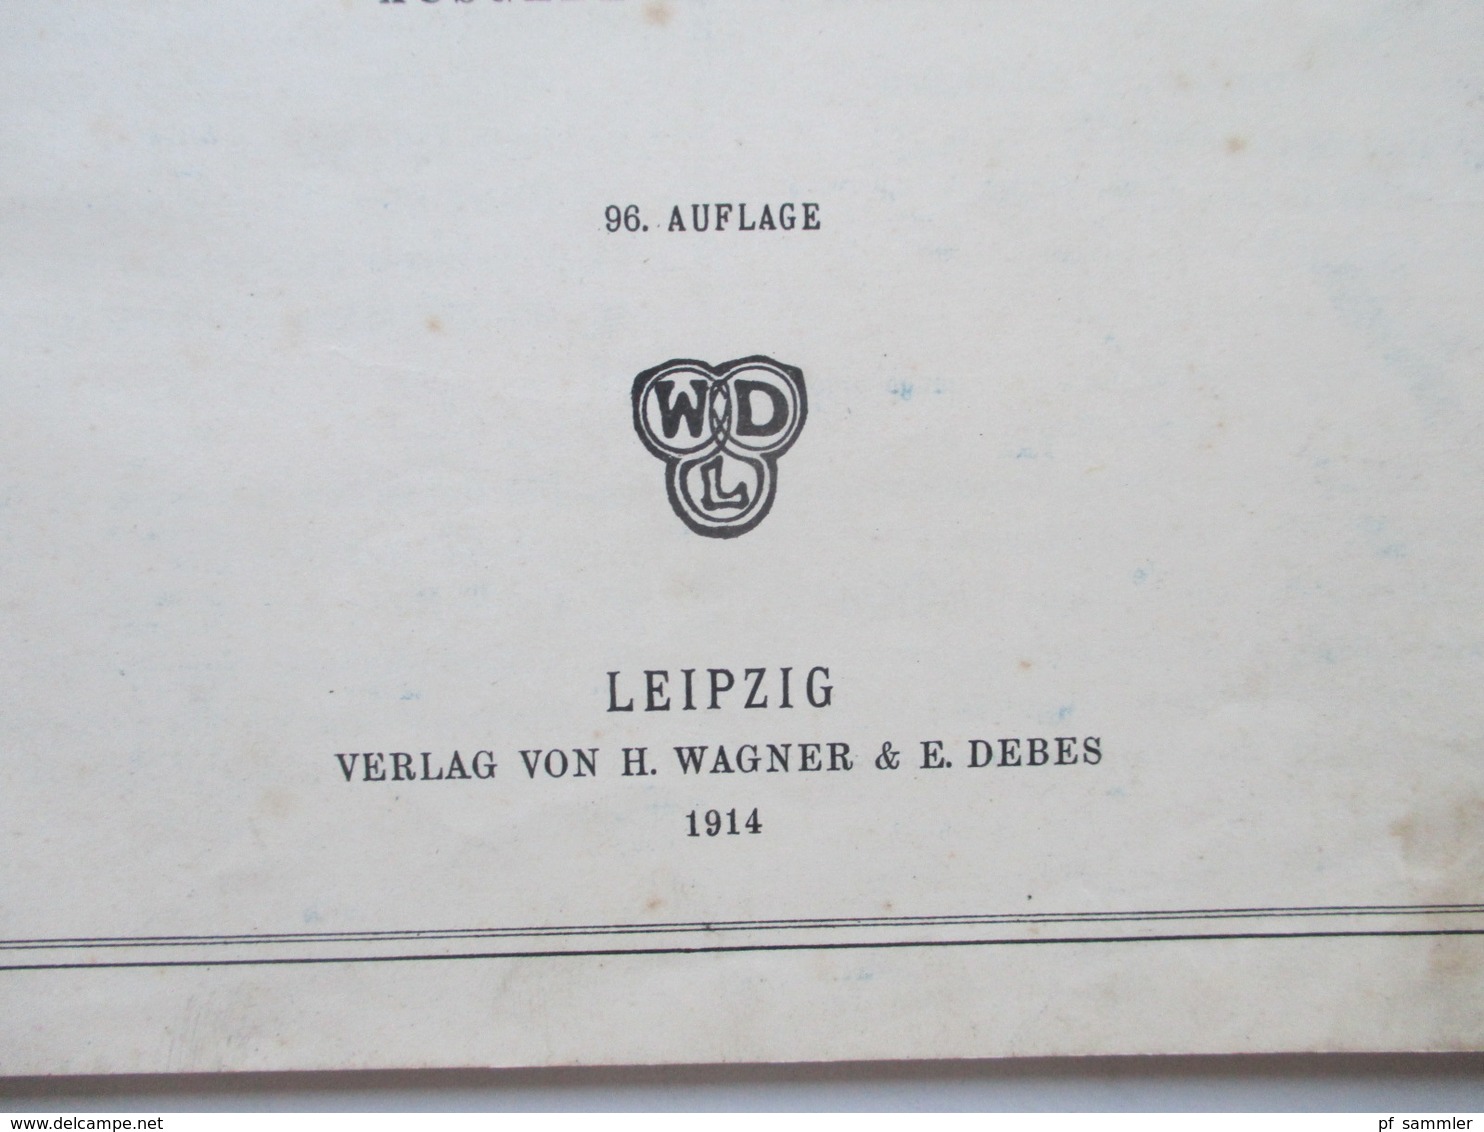 Debes Schulatlas Mit 76 Karten Leipzig H. Wagner & E. Debes. Jahr 1914 - Mapamundis